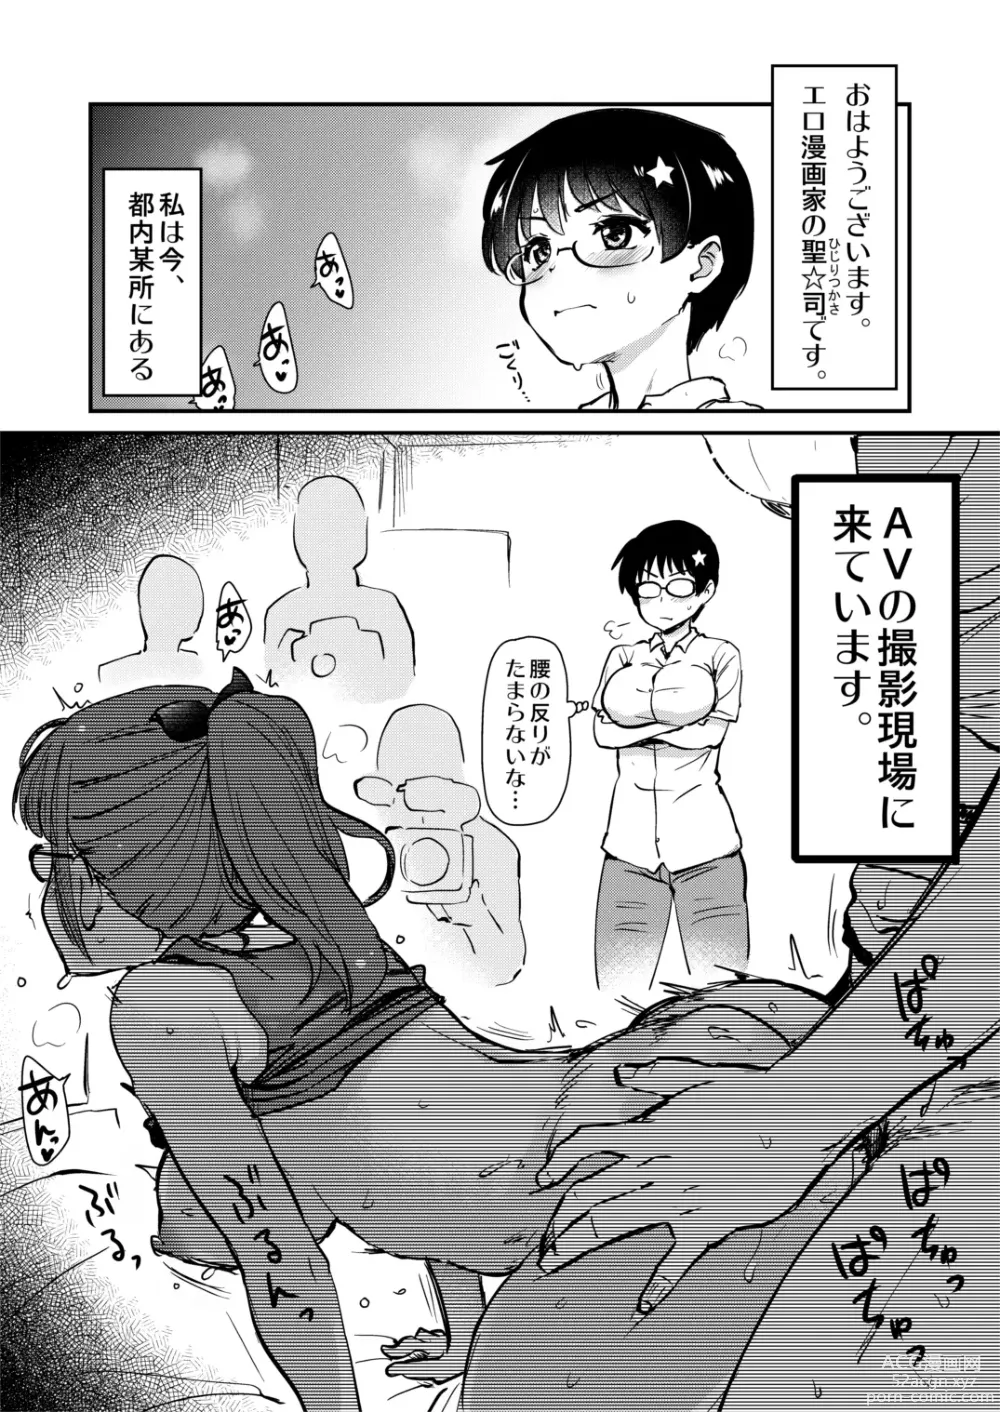 Page 4 of doujinshi Jibun no Kaita Manga ga Jissha AV ni!? Sekkaku nano de Satsuei Genba no Kengaku ni Ittekimashita.